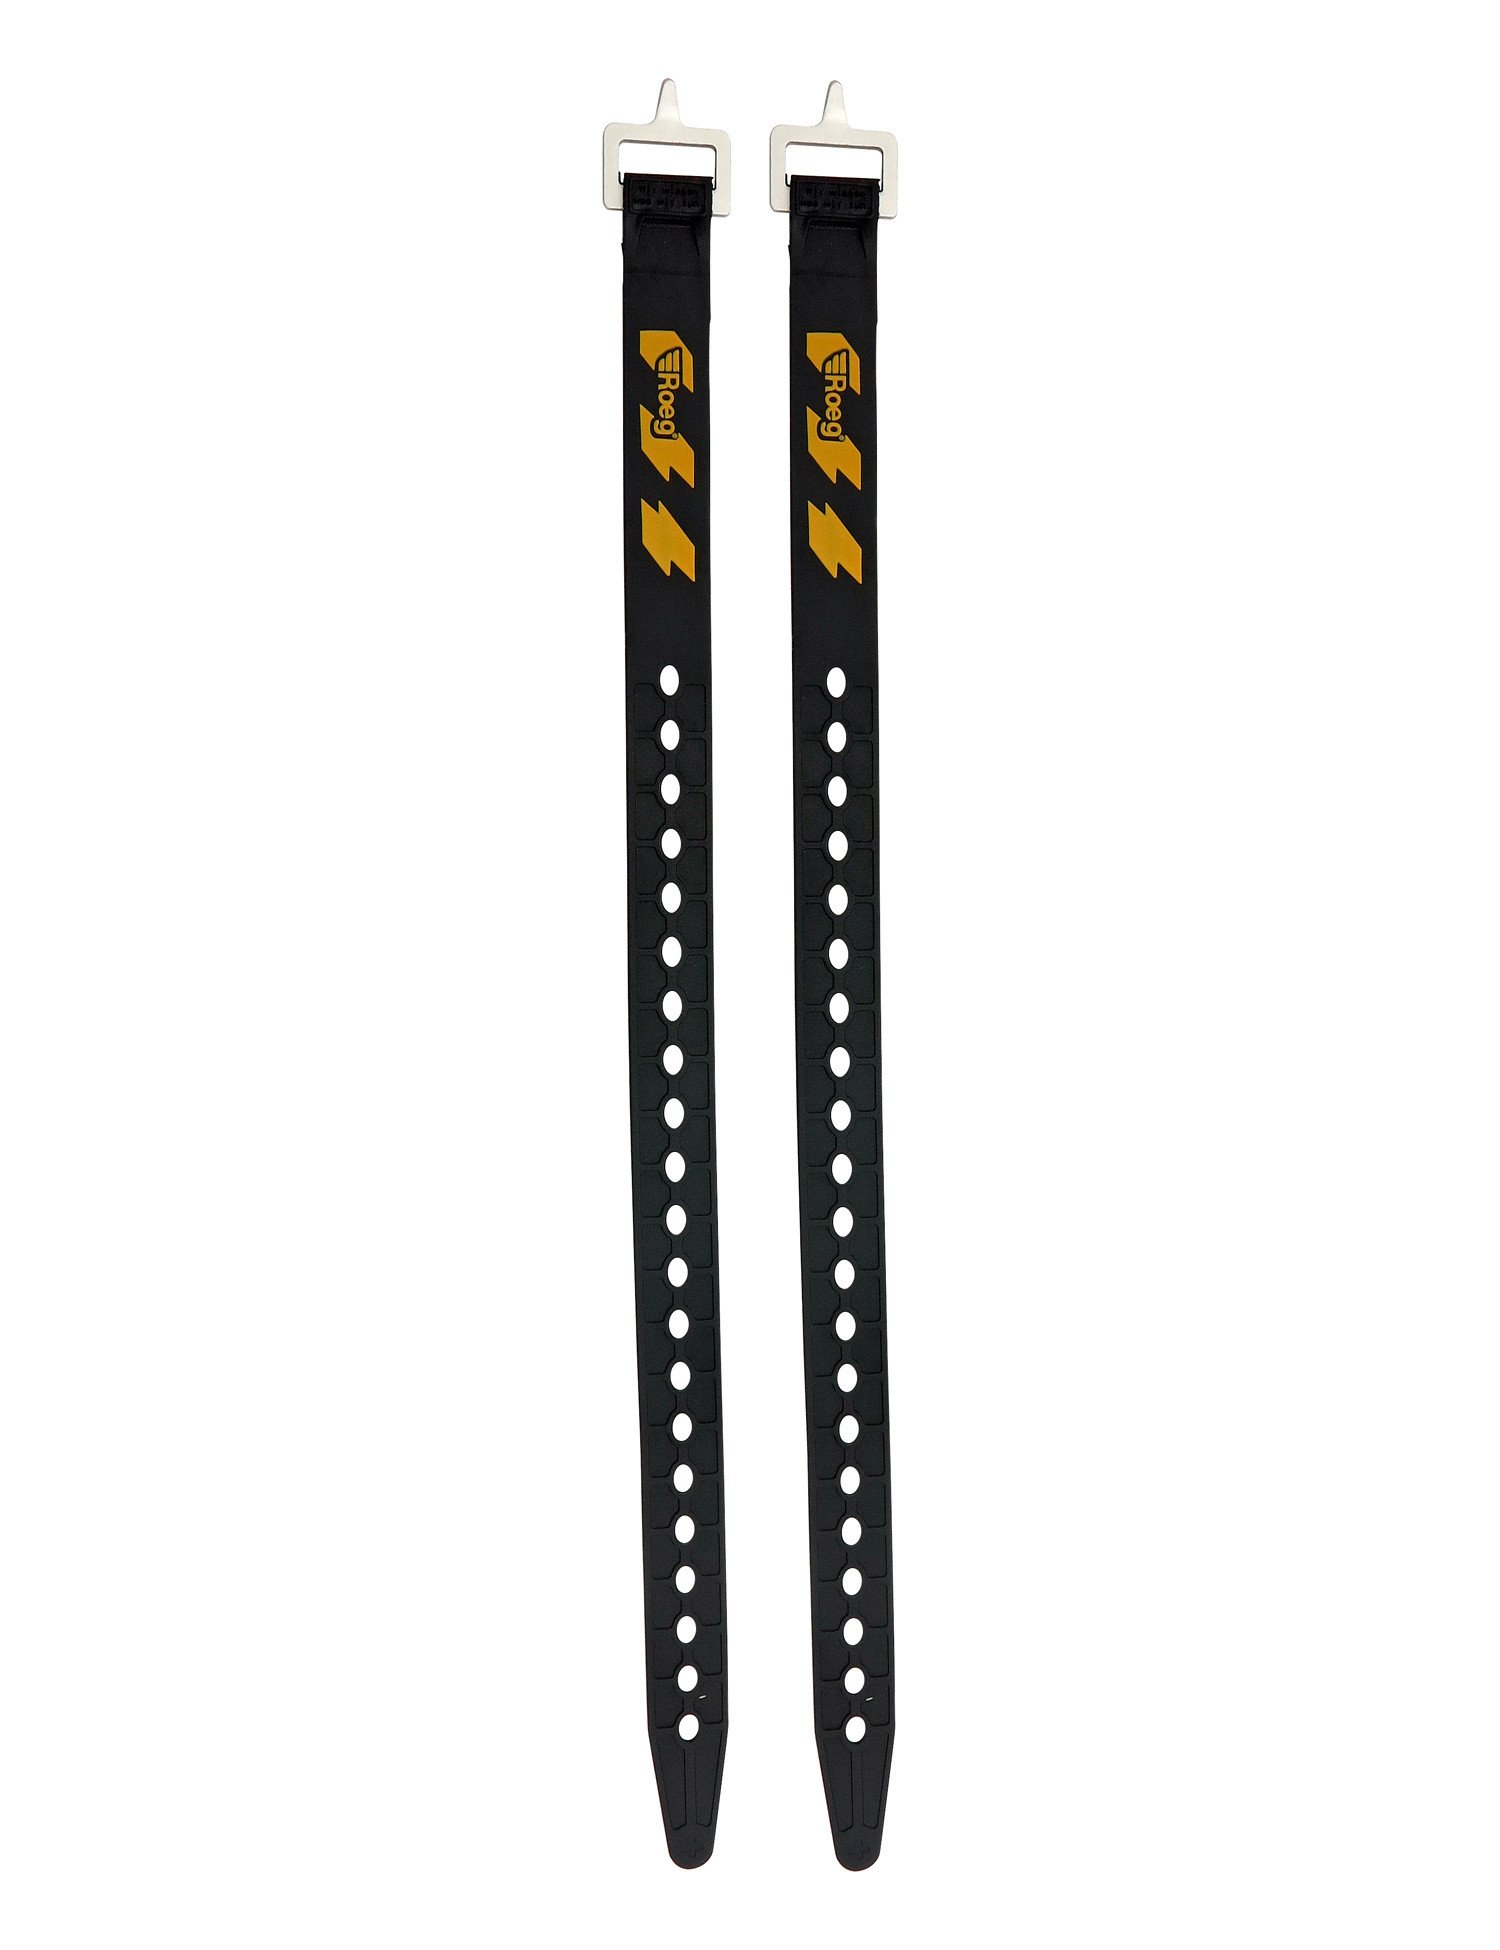 Flexible straps 46 cm black/yellow